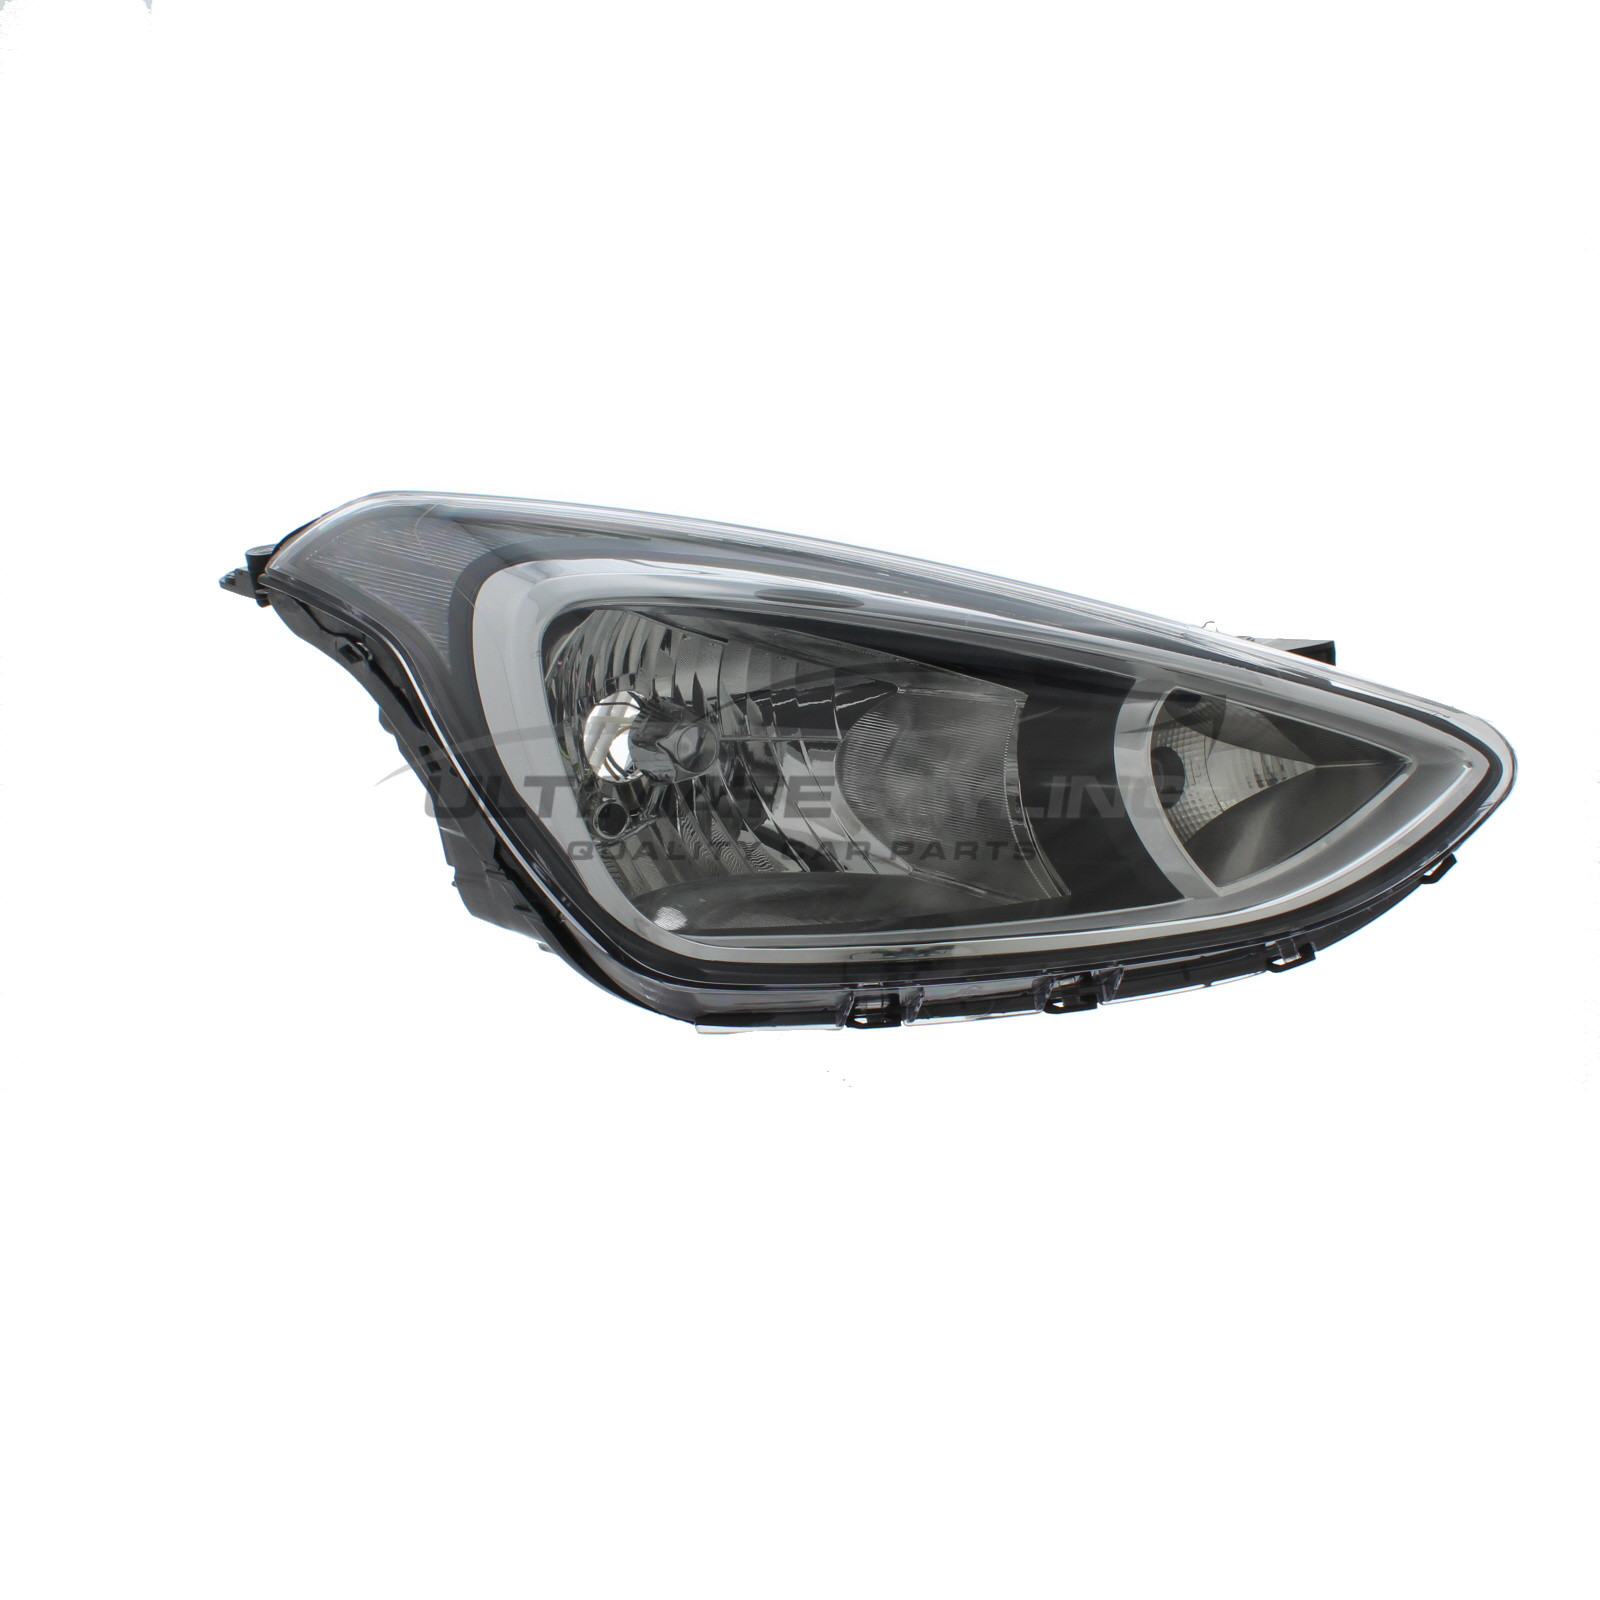 Headlight / Headlamp for Hyundai i10